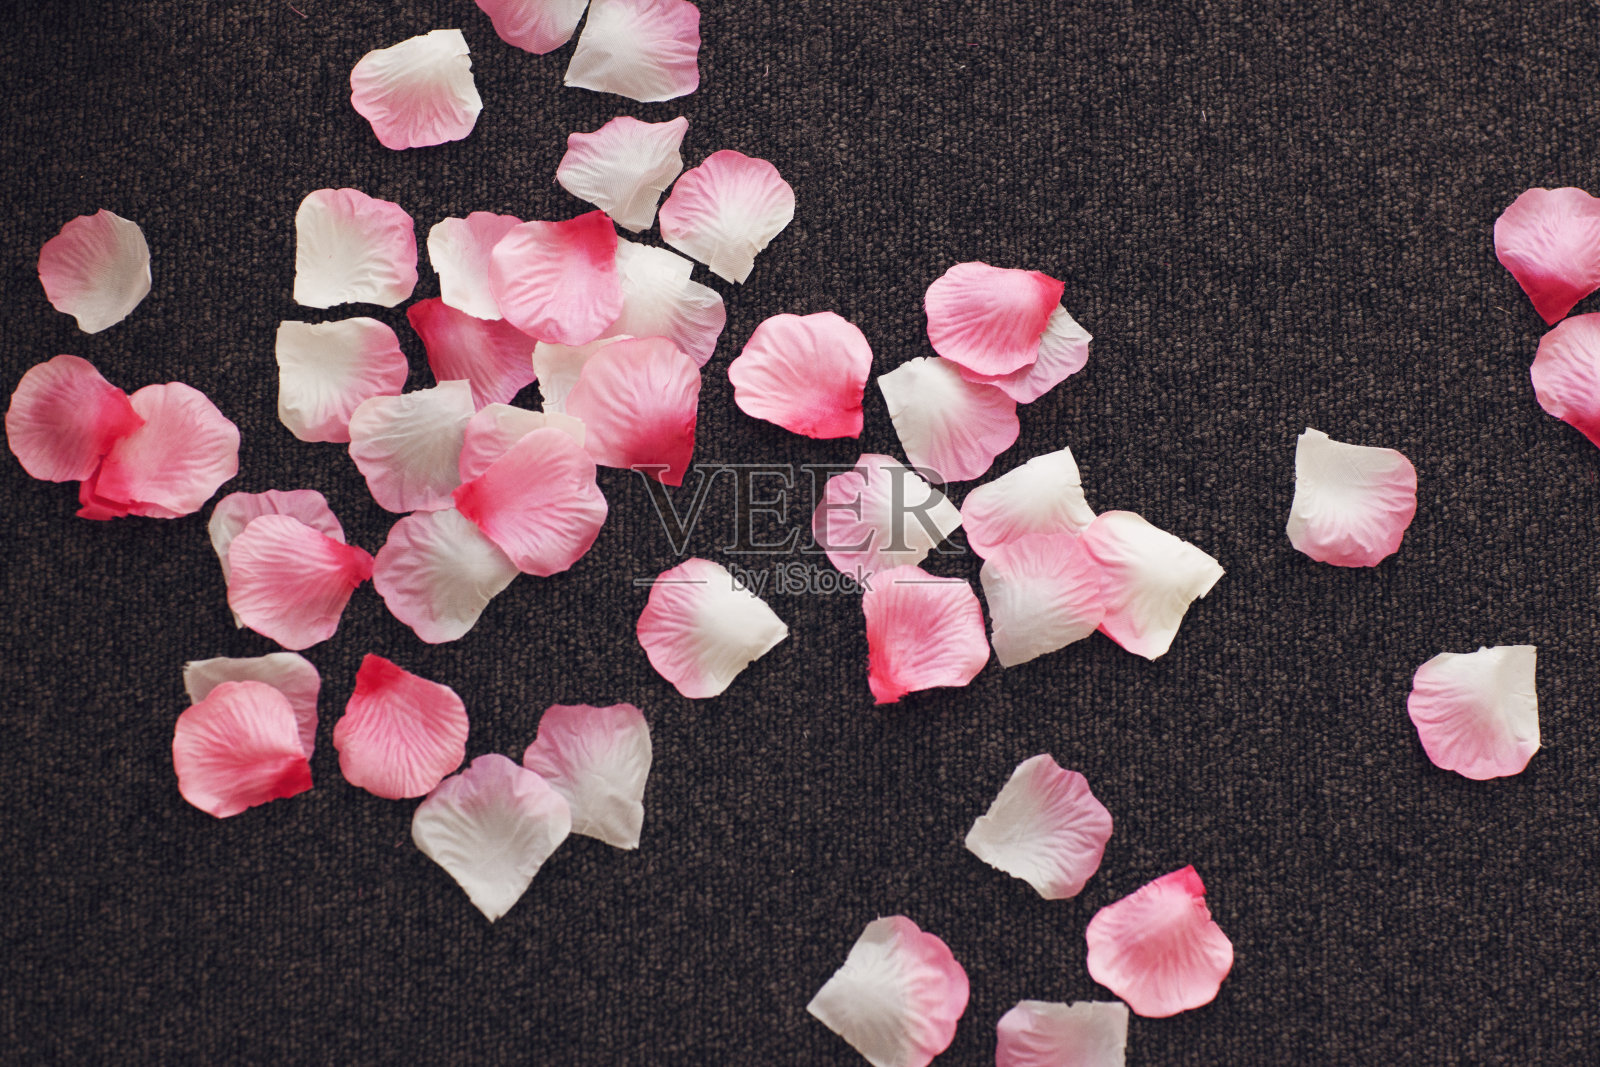 地板上有玫瑰花瓣的五彩纸屑照片摄影图片